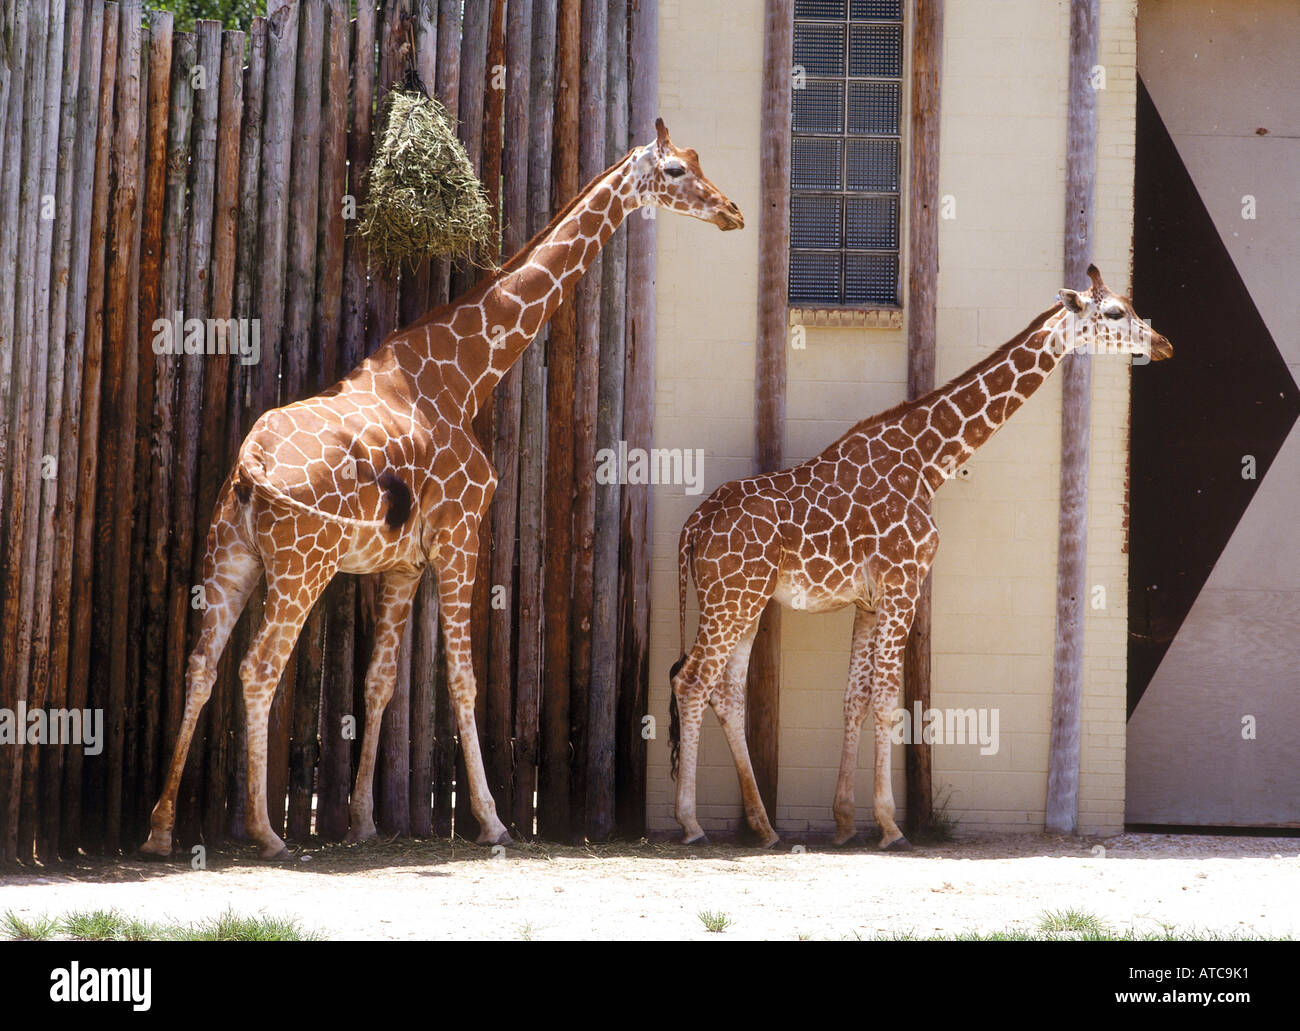 La girafe enceinte de Jacksonville Zoological Park a 61 acres qui abrite plus de 700 animaux et oiseaux dans une variété d'habitats Banque D'Images